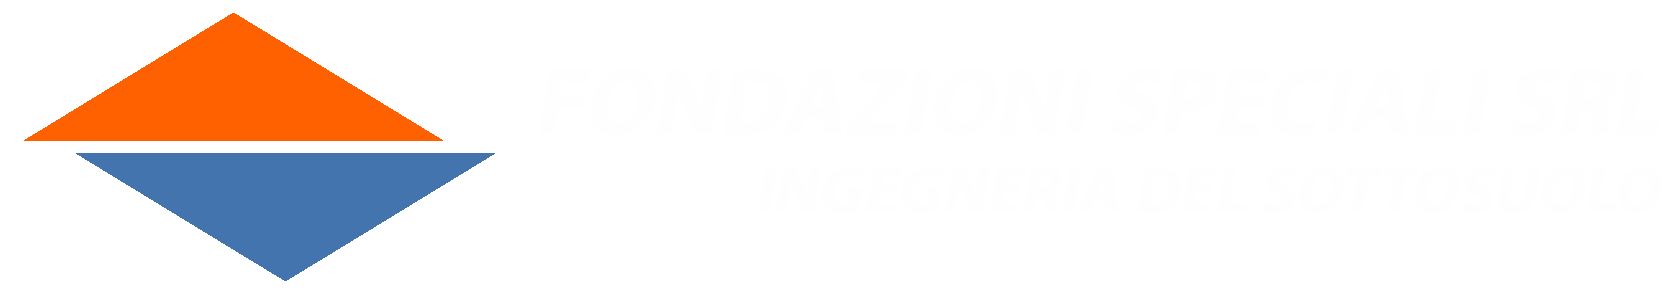 Fondazioni speciali Bergamo